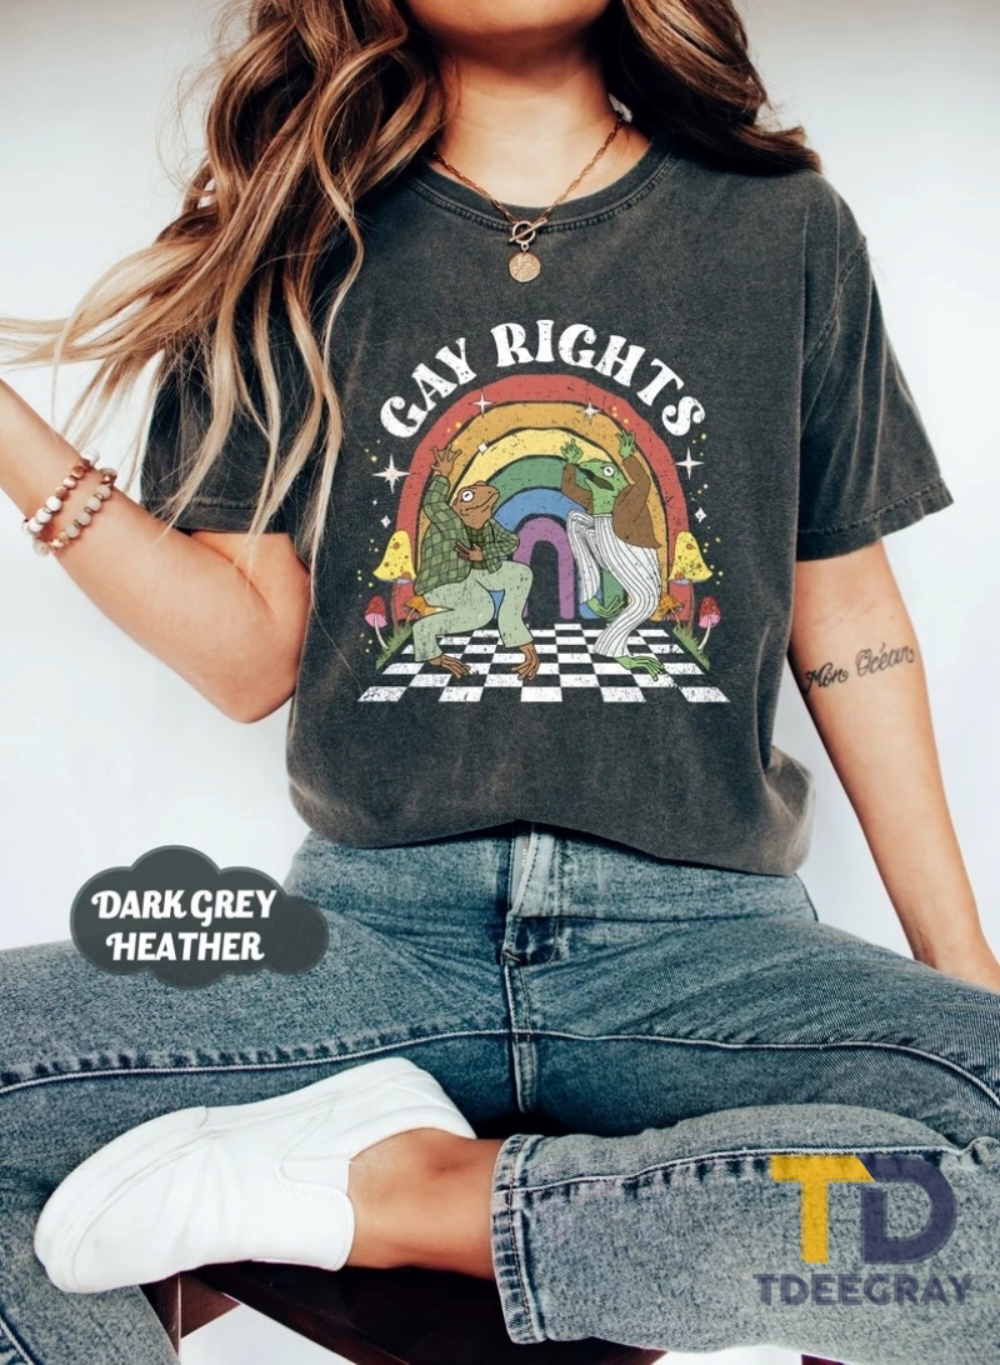 Frog & Toad Say Gay Rights Shirt Lgbt Rainbow Shirt - Tdeegray